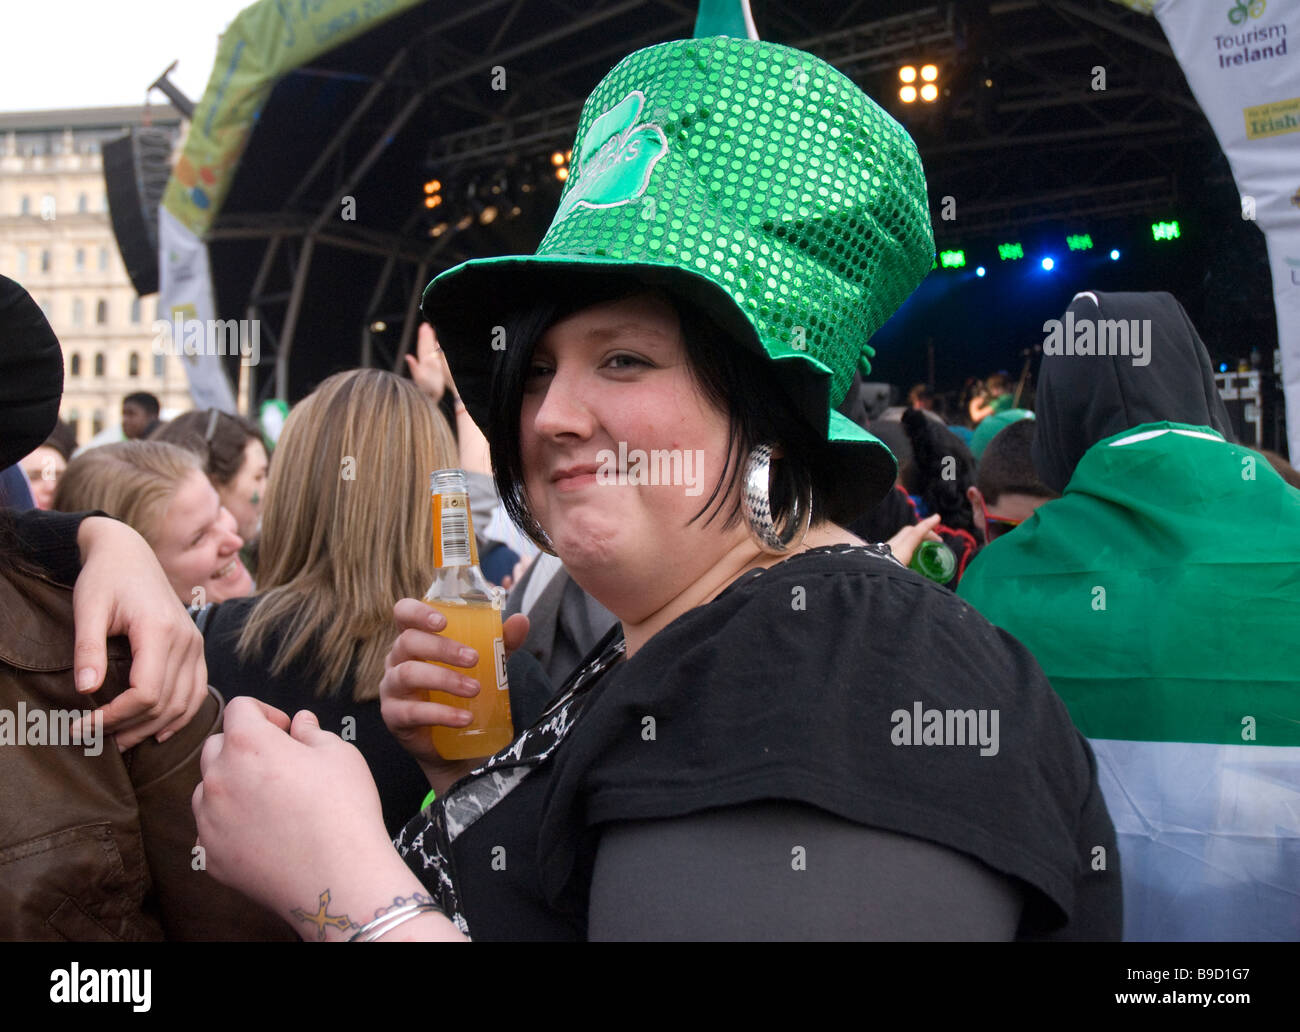 St Patrick’s day celebrations in Trafalgar Square Stock Photo